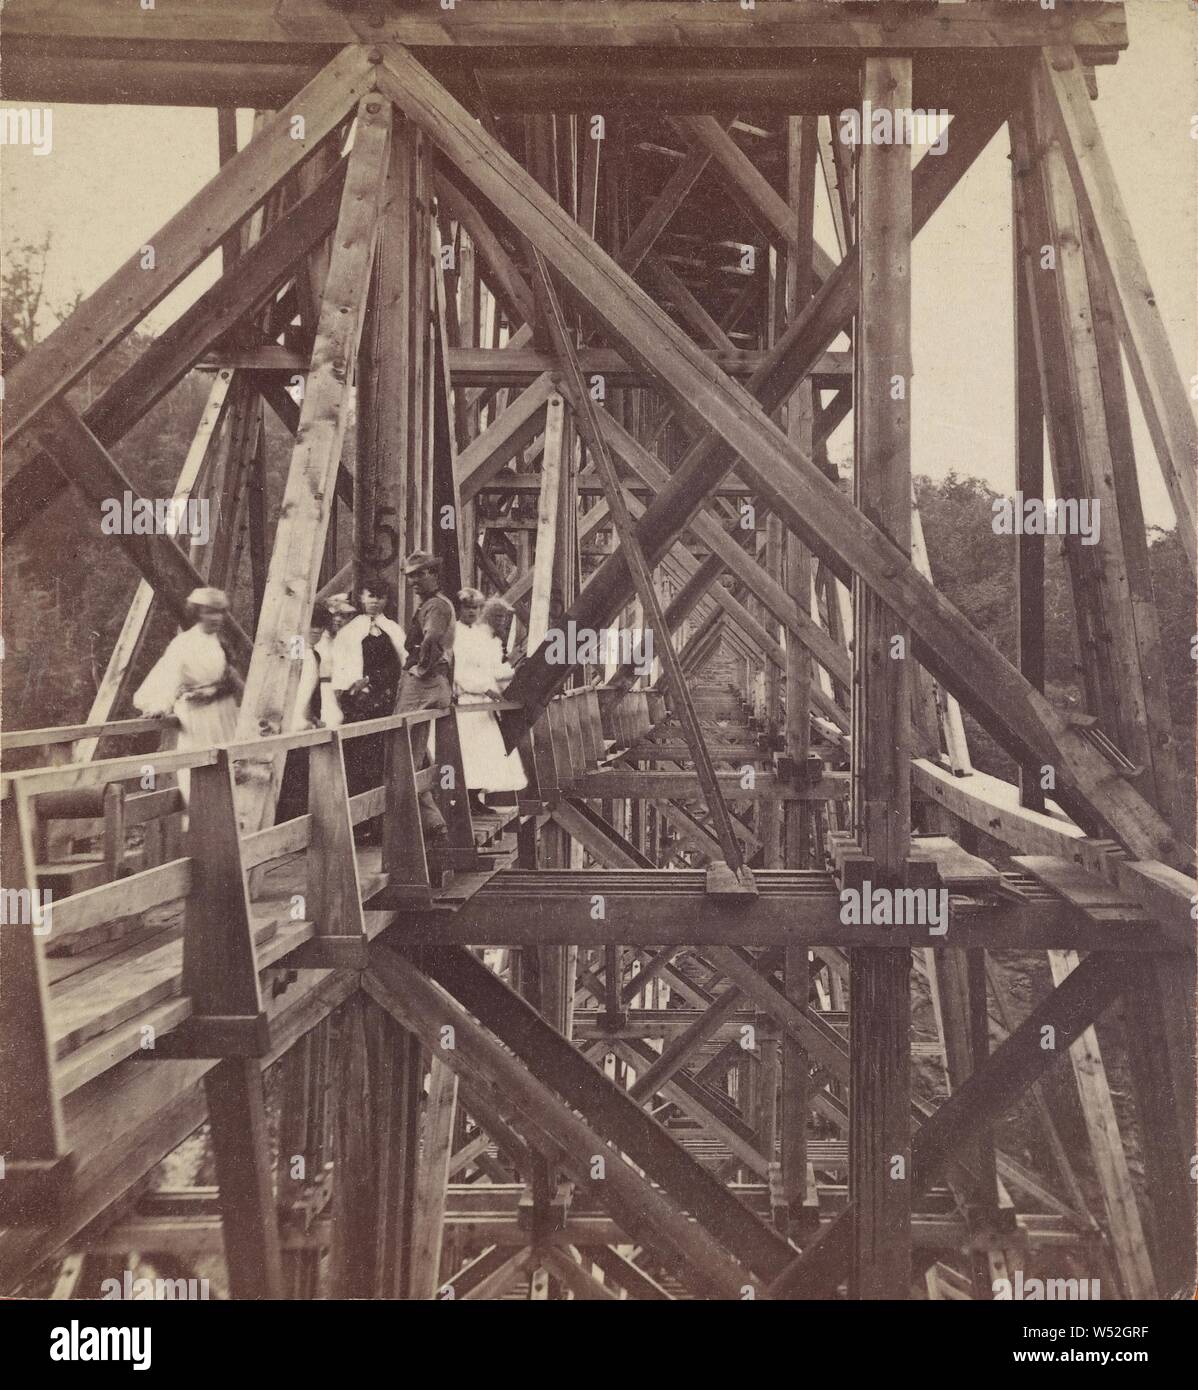 Coupe de Portage haut pont (parmi les bois.), Charles W. Buell (États-Unis, actif 1870), vers 1870, à l'albumine argentique Banque D'Images